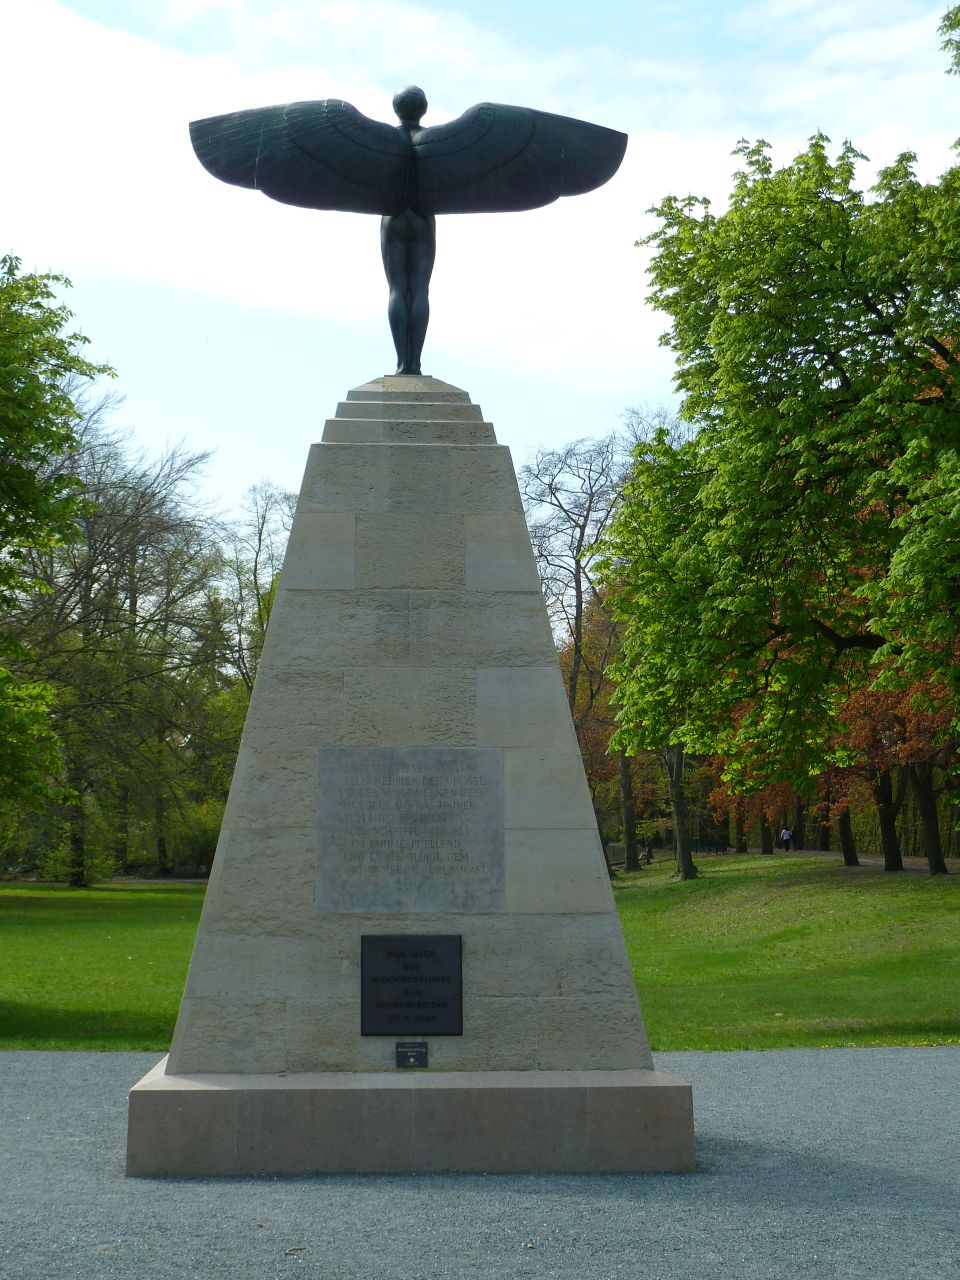 Denkmal für 'Otto Lilienthal' im Bäkepark in 'Berlin-Lichterfelde Ost'